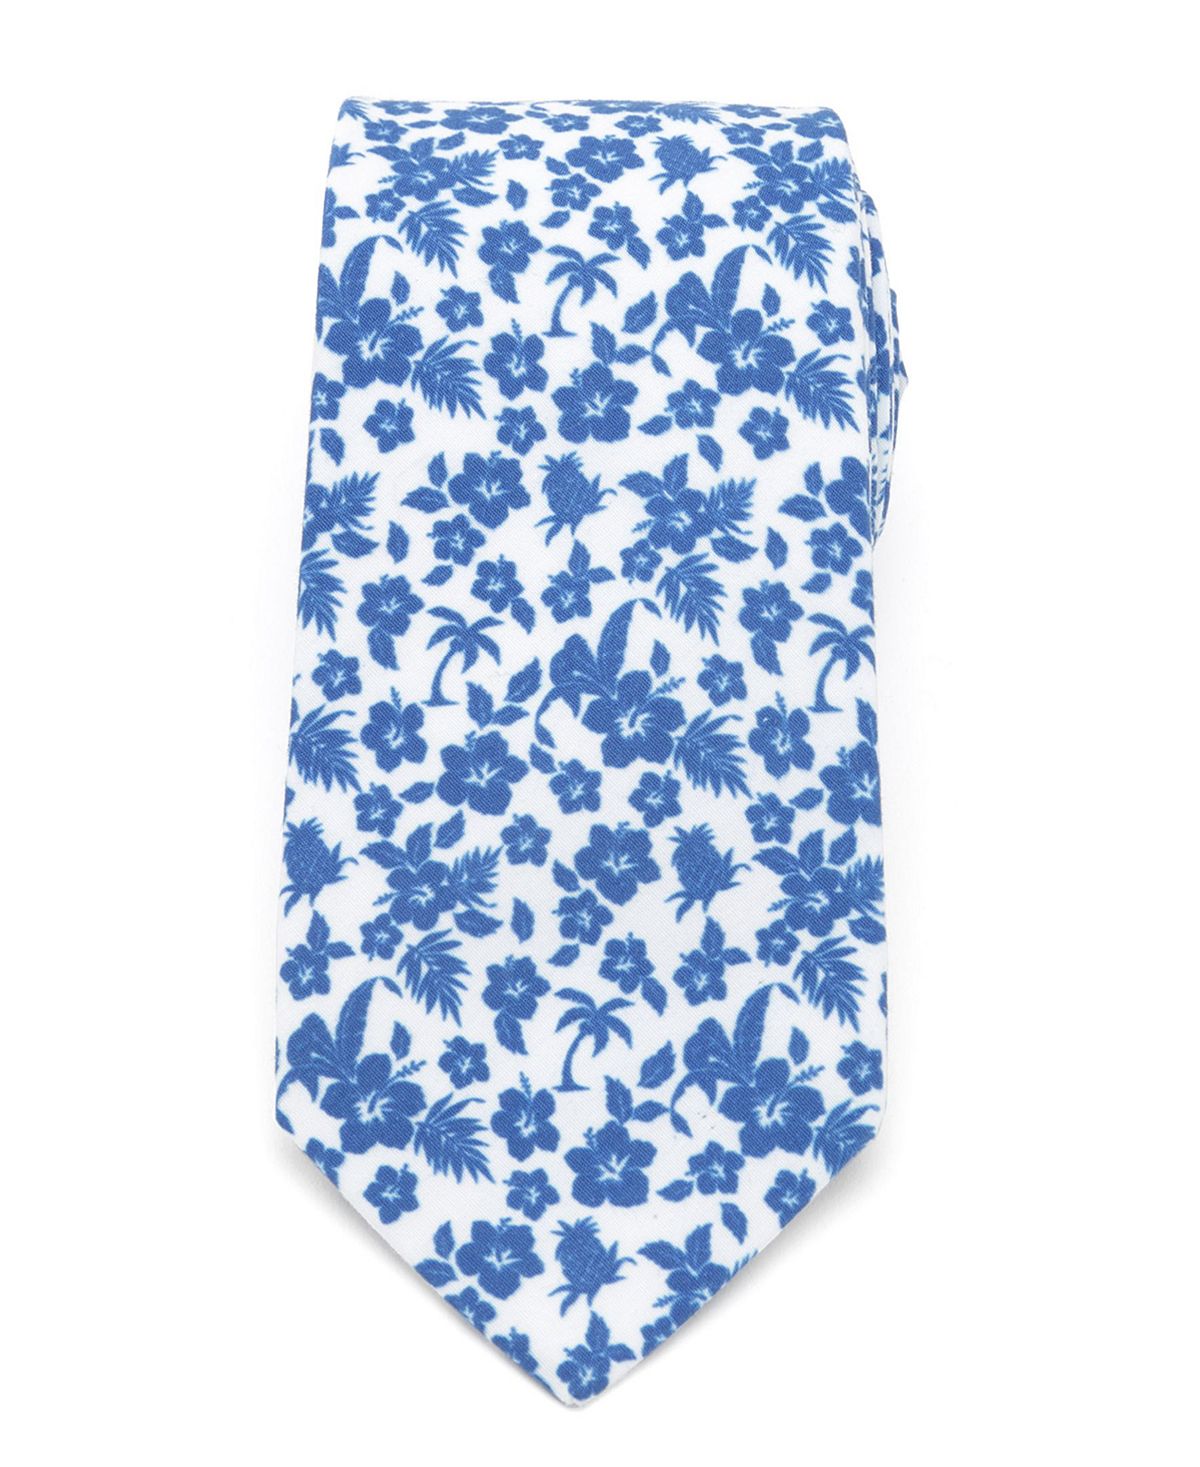 Мужской синий галстук в тропическом стиле Cufflinks Inc. мужской галстук для шафера cufflinks inc